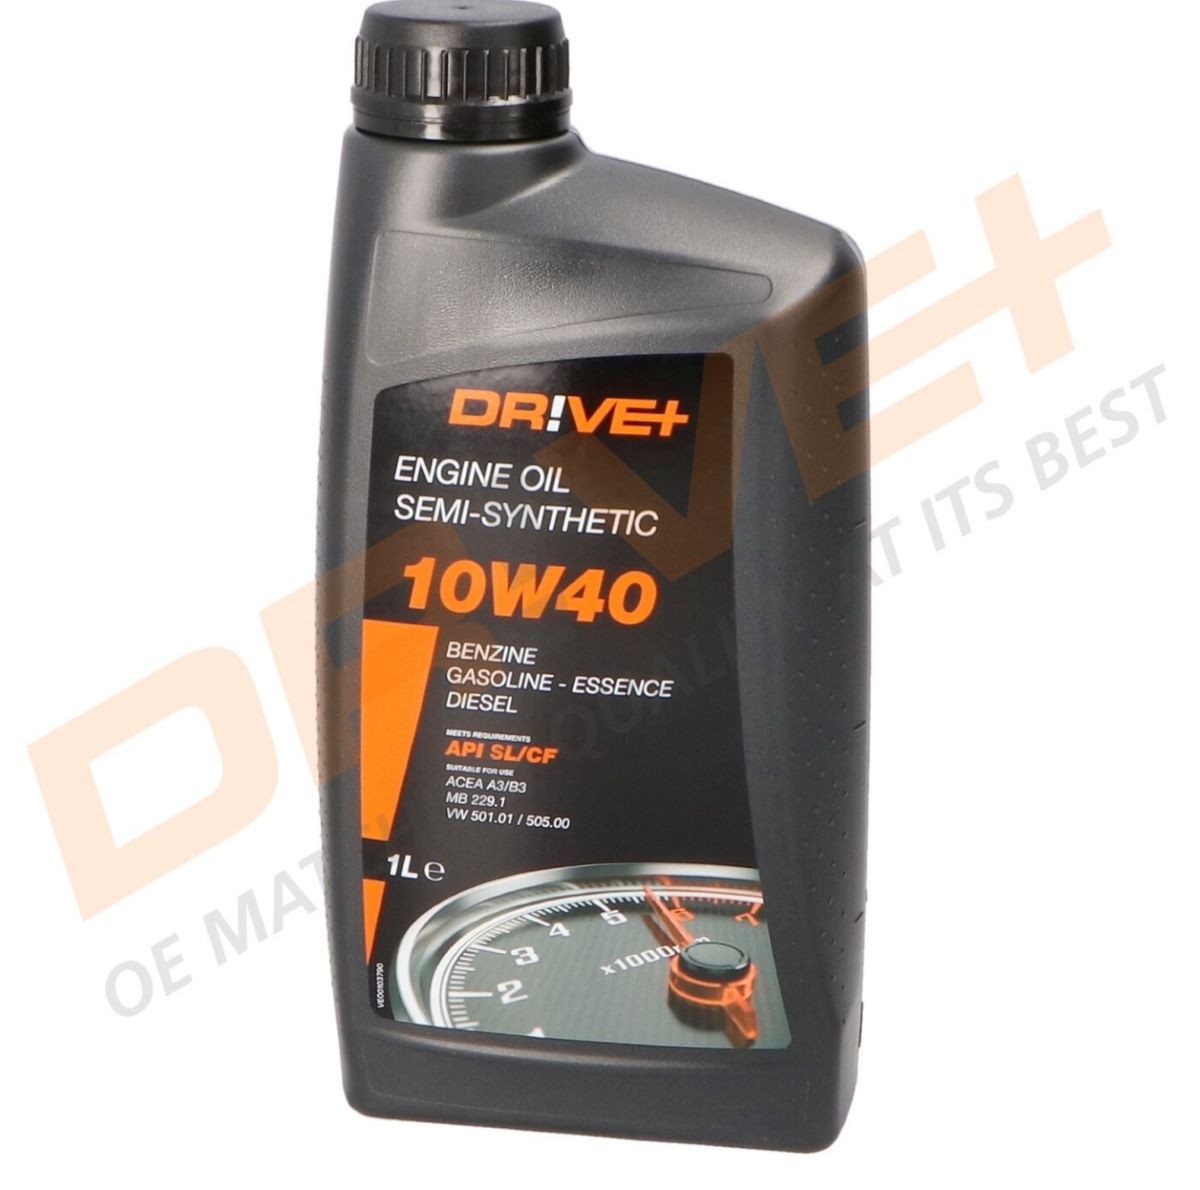 Original DP3310.10.042 Dr!ve+ Car oil FORD